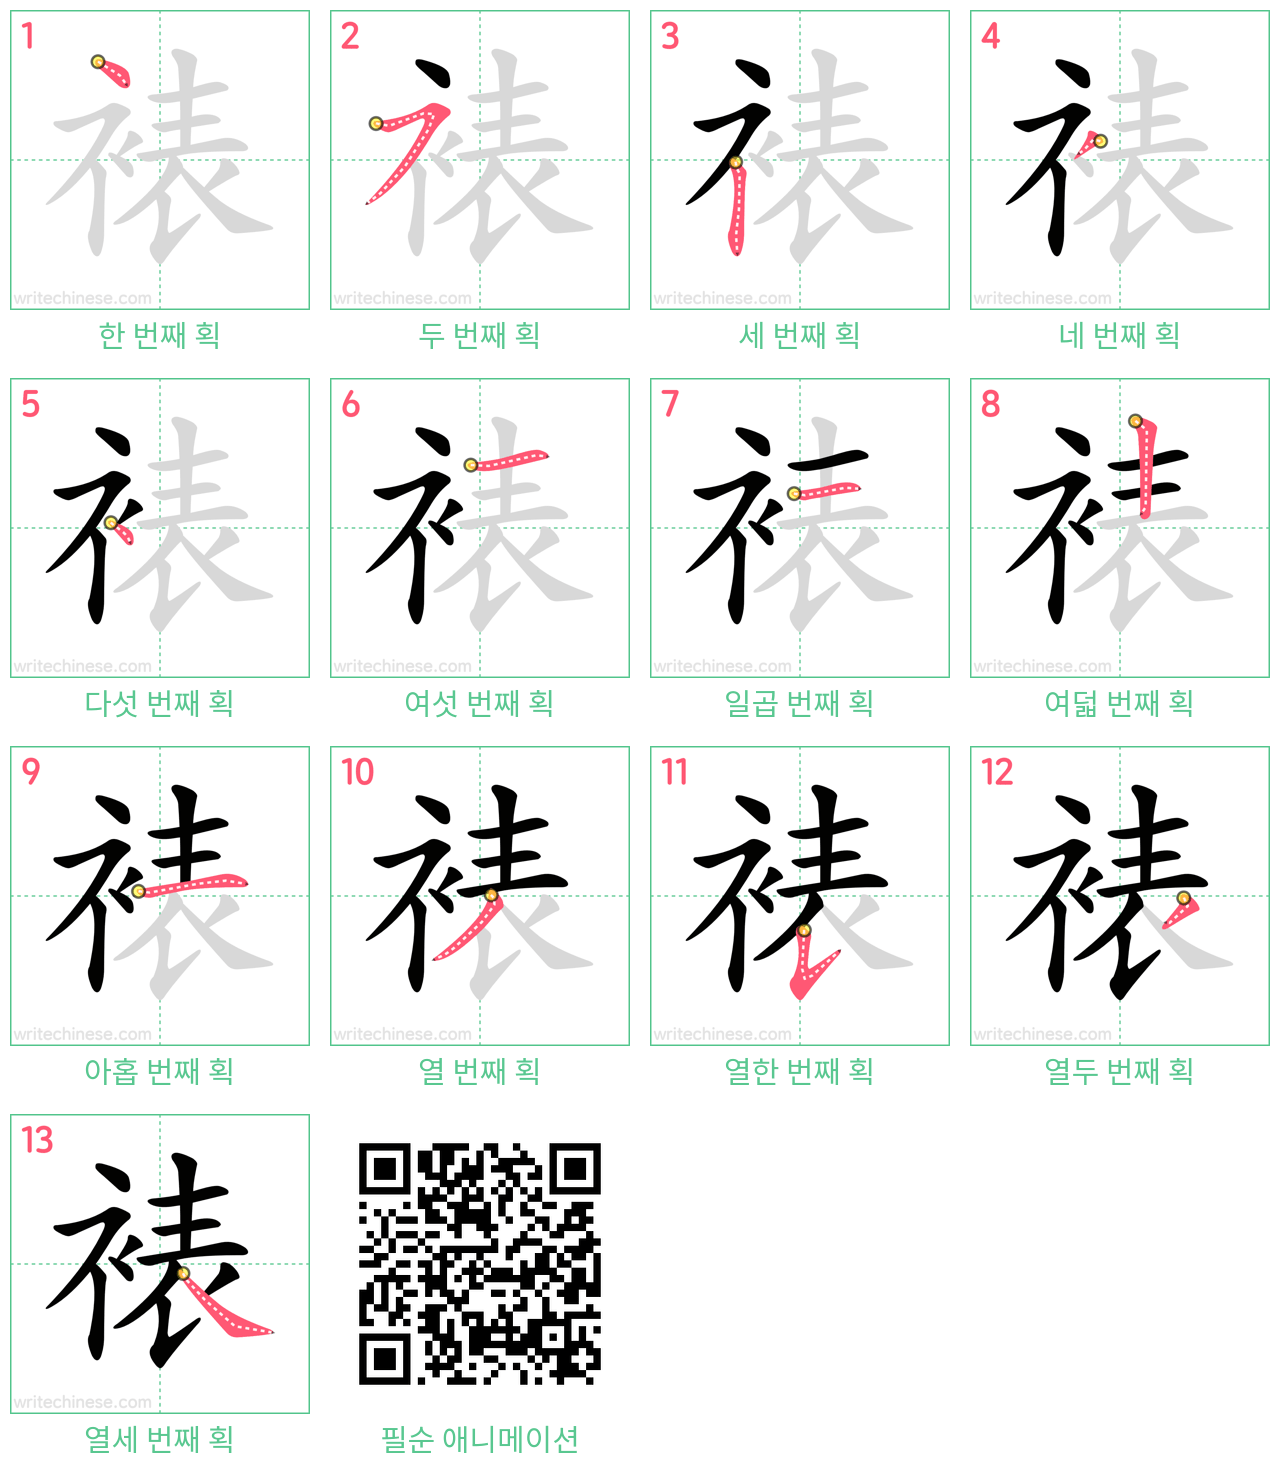 裱 step-by-step stroke order diagrams